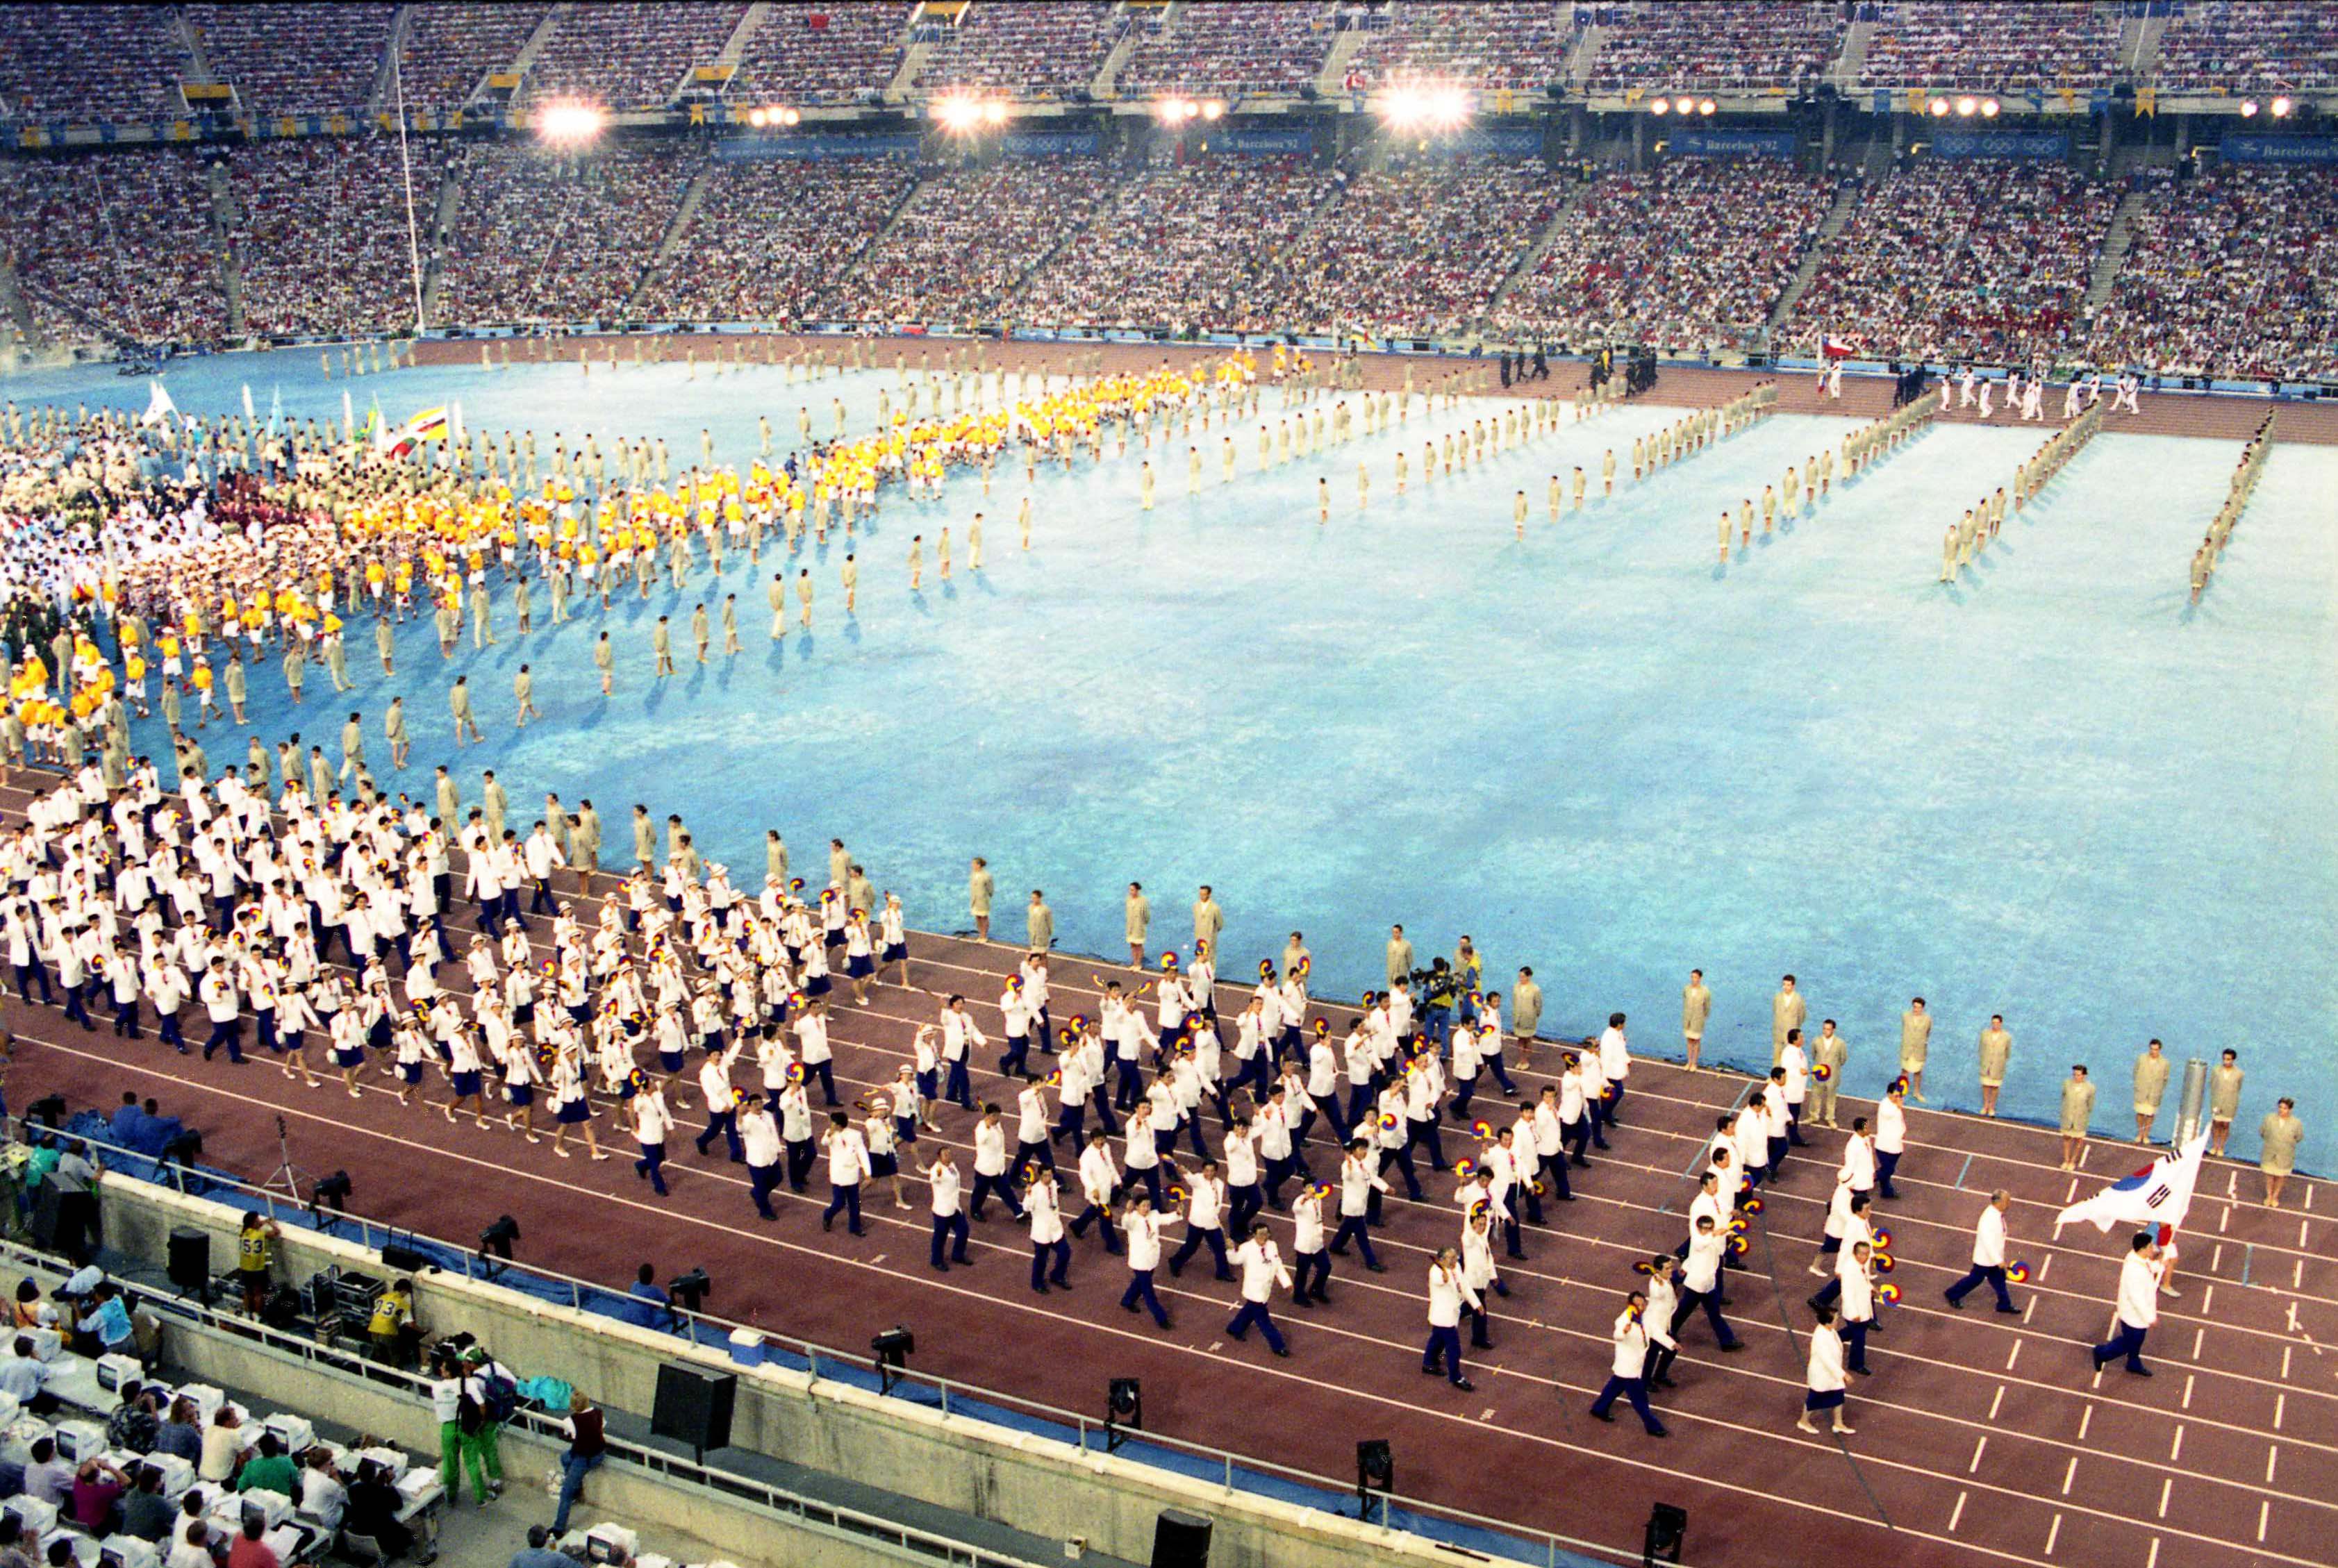 제25회 바르셀로나 하계 올림픽 개막식